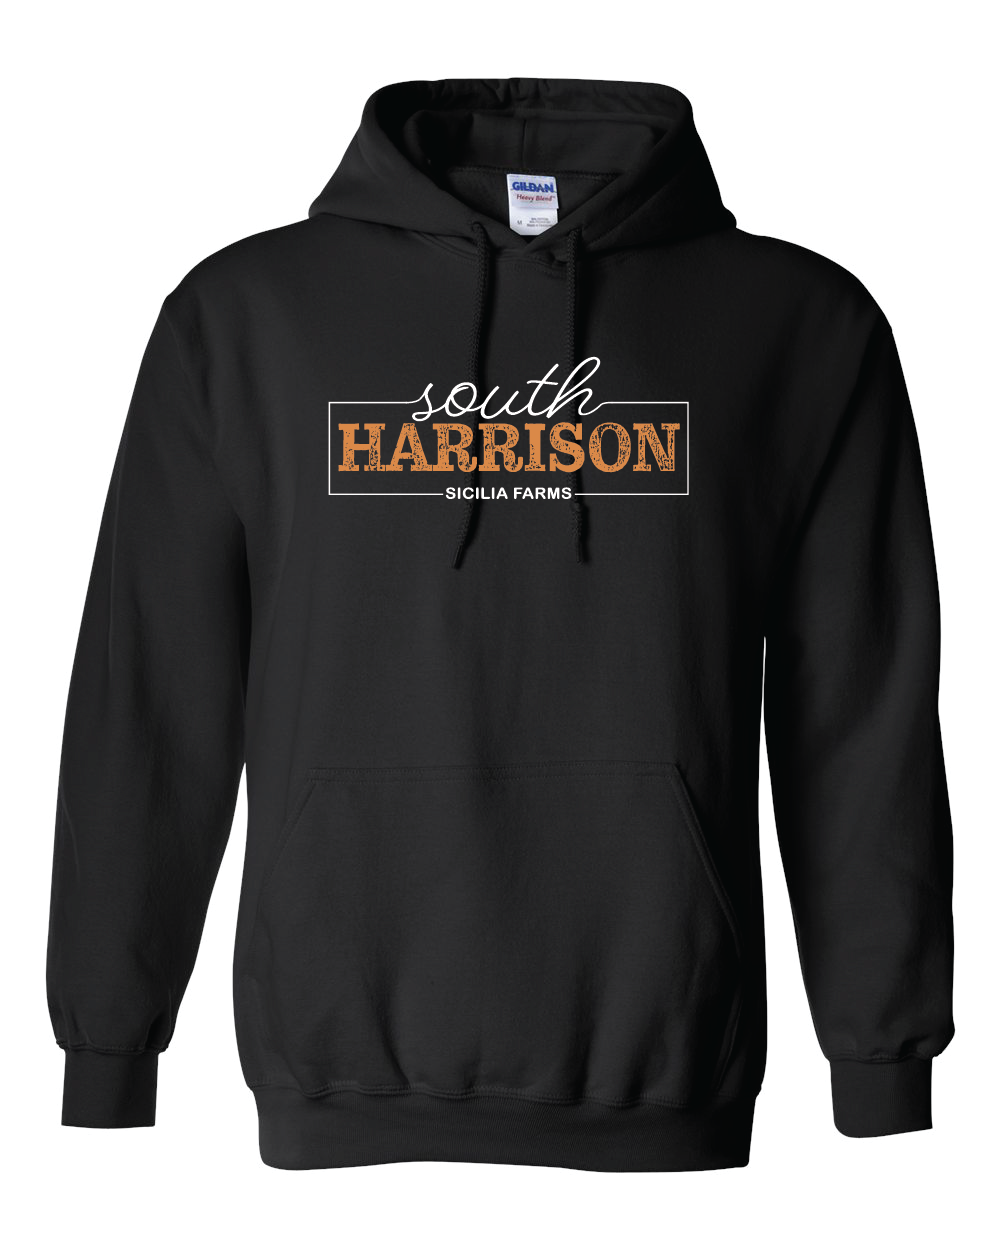 South Harrison - Heavy Blend Hooded Sweatshirt